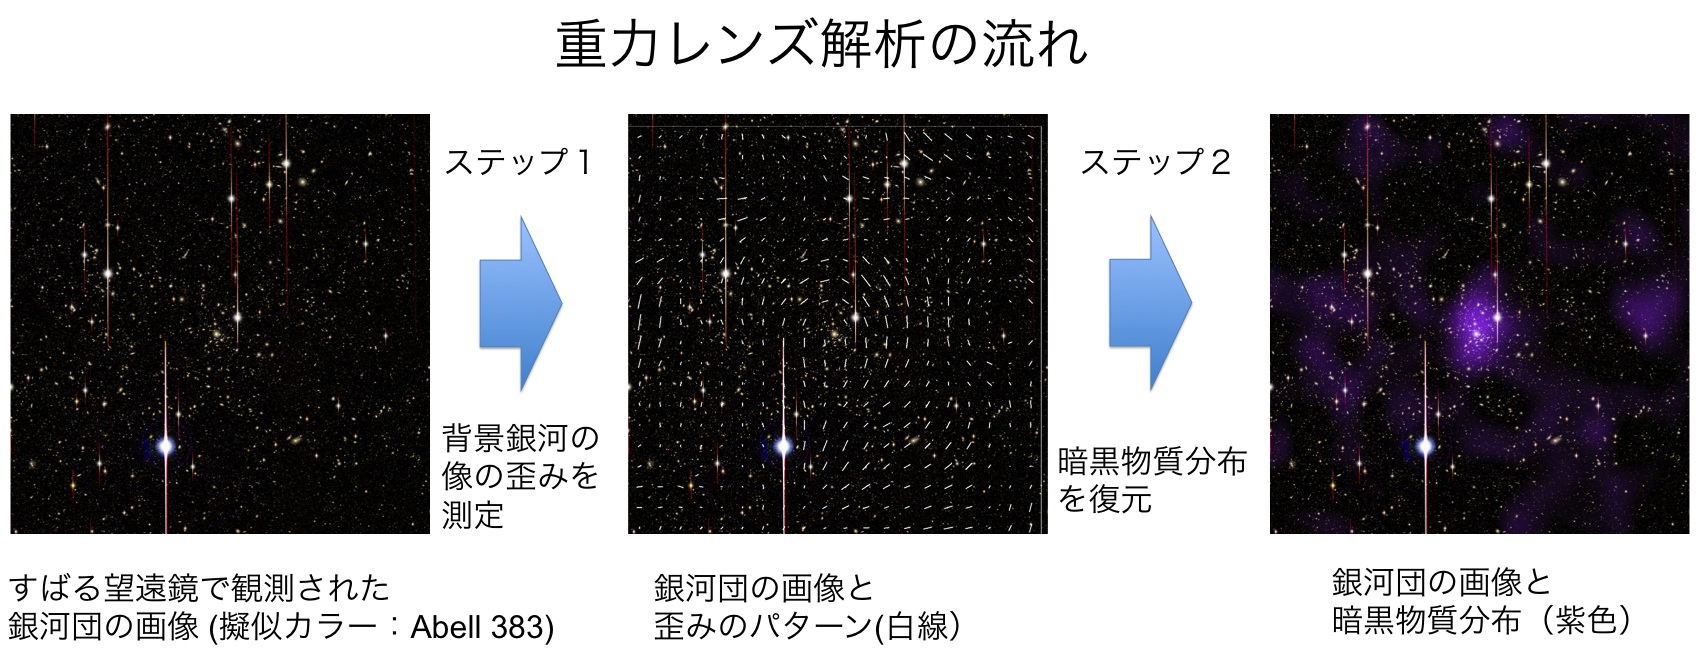 図１: すばる望遠鏡で観測された銀河団の画像 (左) から暗黒物質分布 (右)を復元する流れ。観測画像に写っている背景銀河の形状を精密に測定し、視野全体でのゆがみのパターン (中央)を調べることで、銀河団領域での暗黒物質分布を測定することが可能になります。(Credit: NAOJ/ASIAA/School of Physics and Astronomy, University of Birmingham/Kavli IPMU/Astronomical institute, Tohoku University)